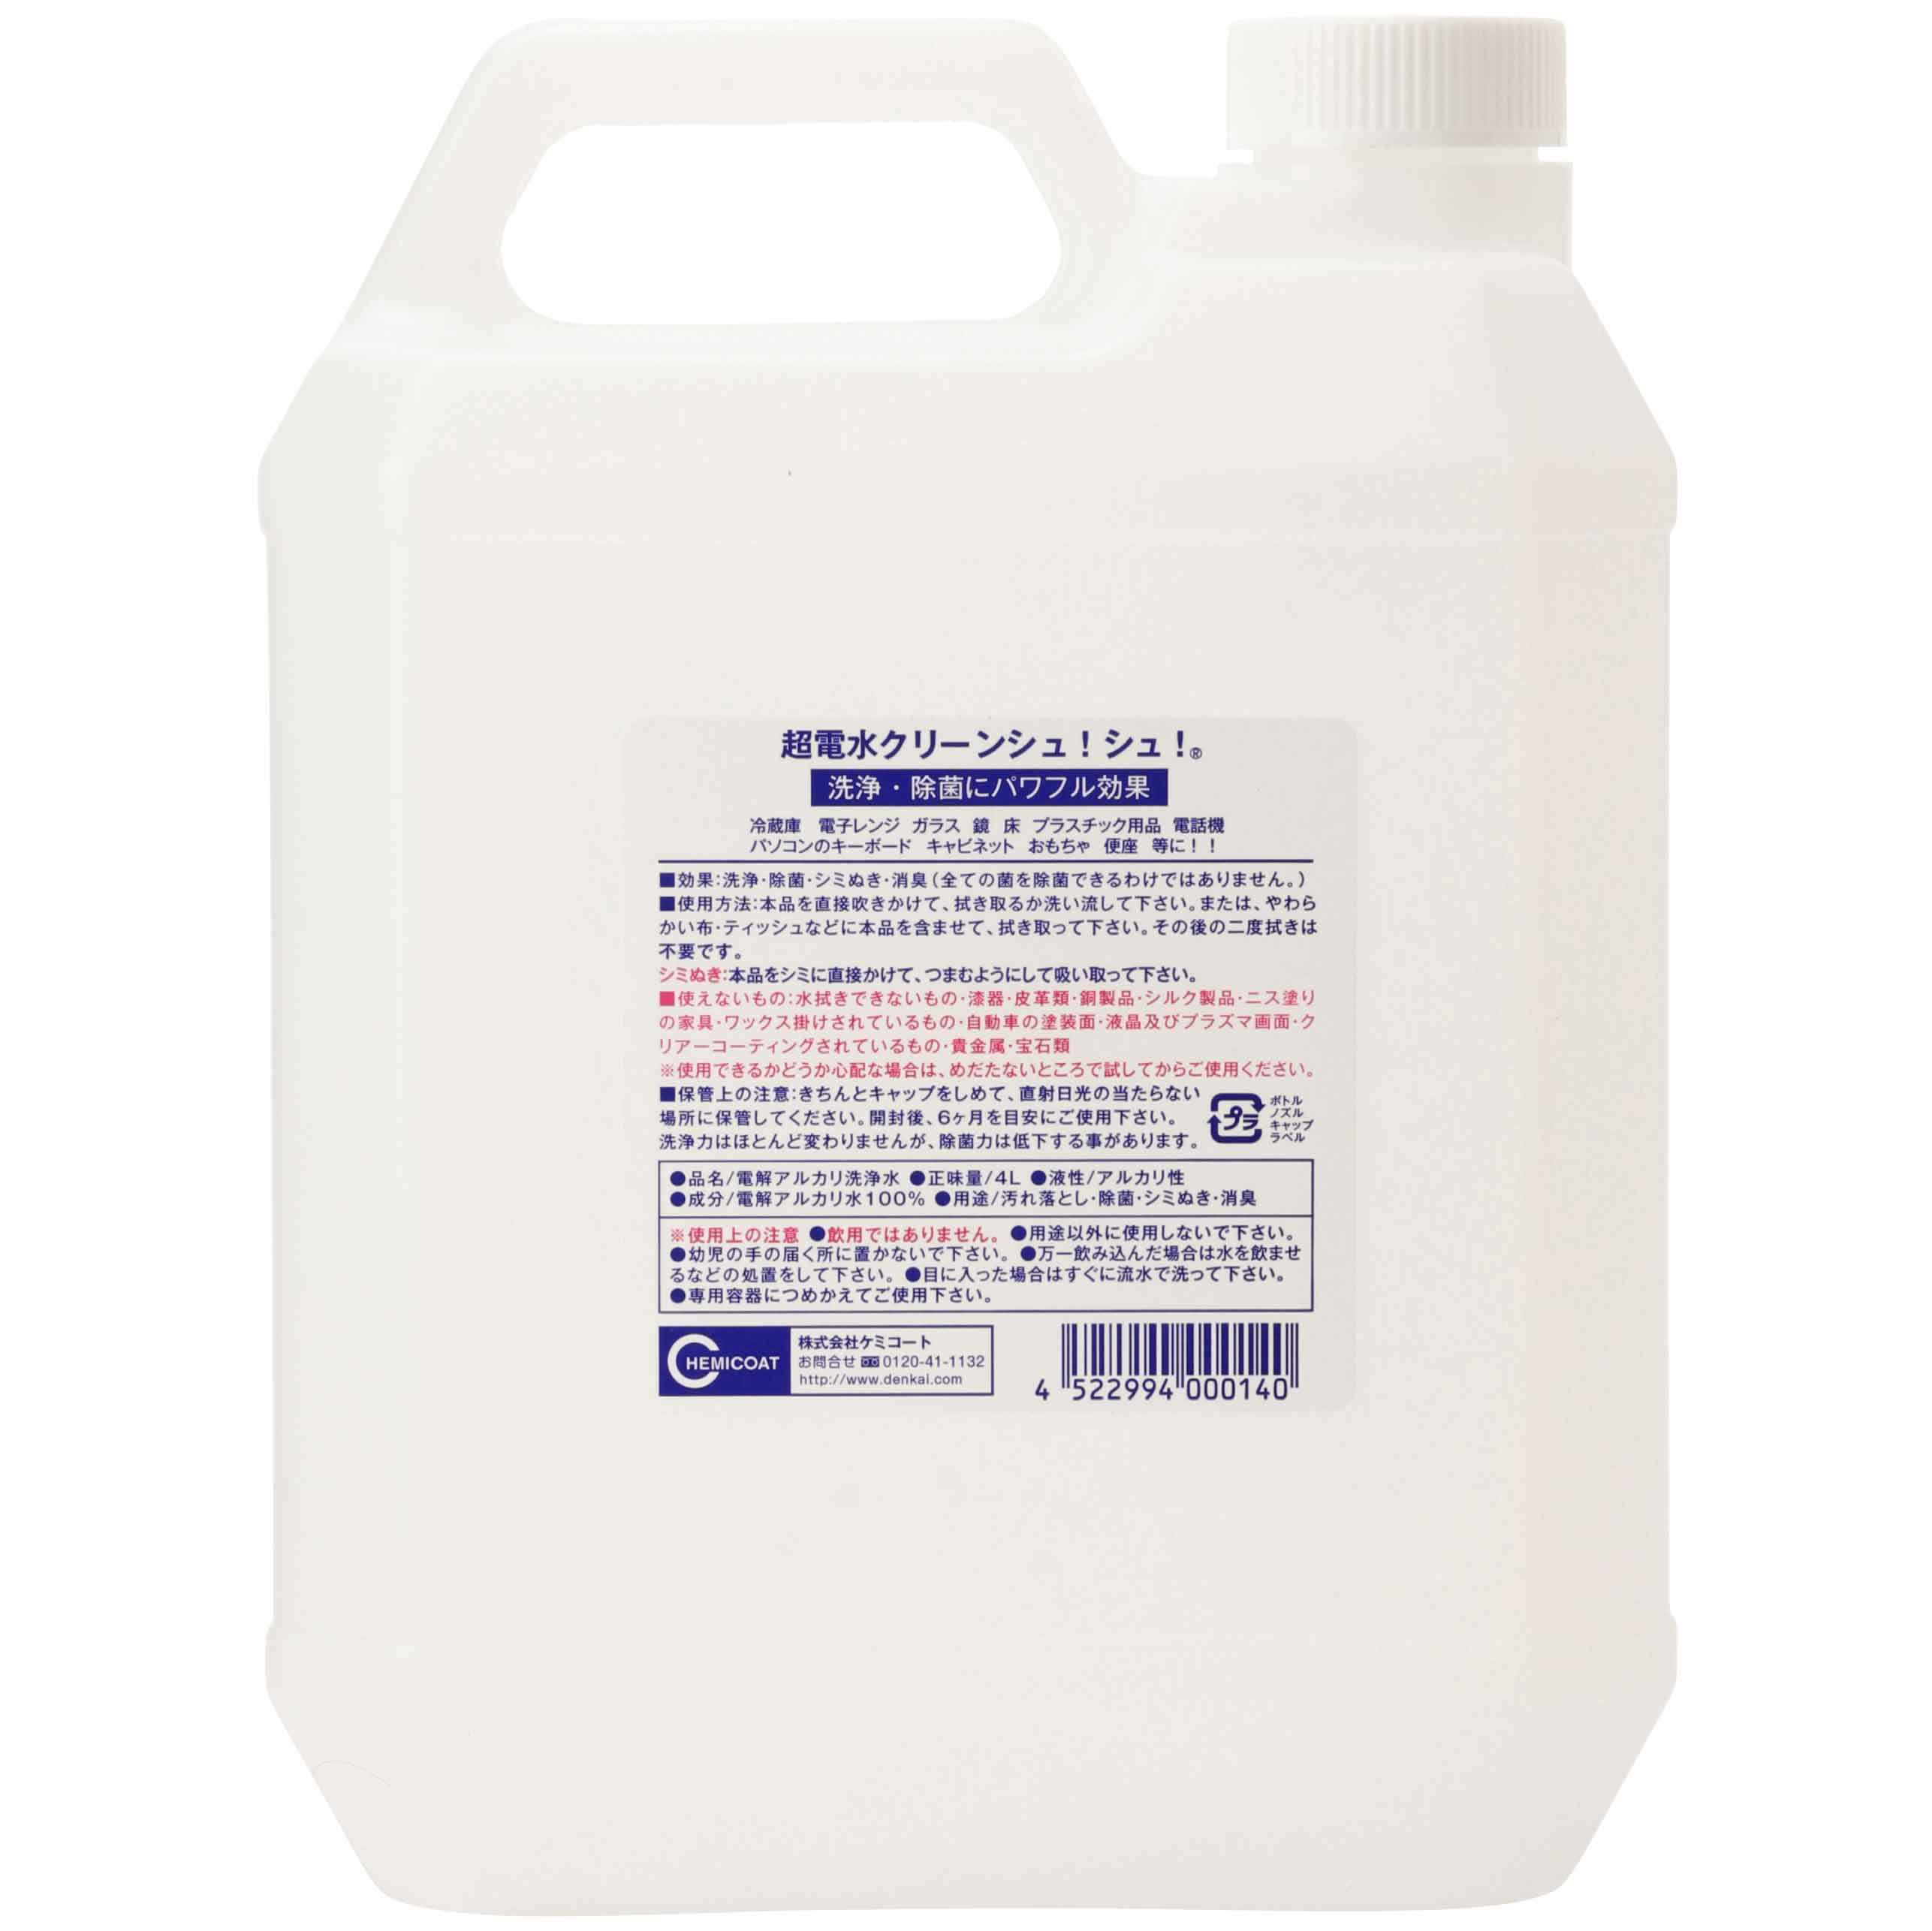 Nước ion siêu kiềm CEAN SHU! SHU! 4L Diệt khuẩn - Khử mùi - Làm sạch - Không hóa chất từ Nhật Bản